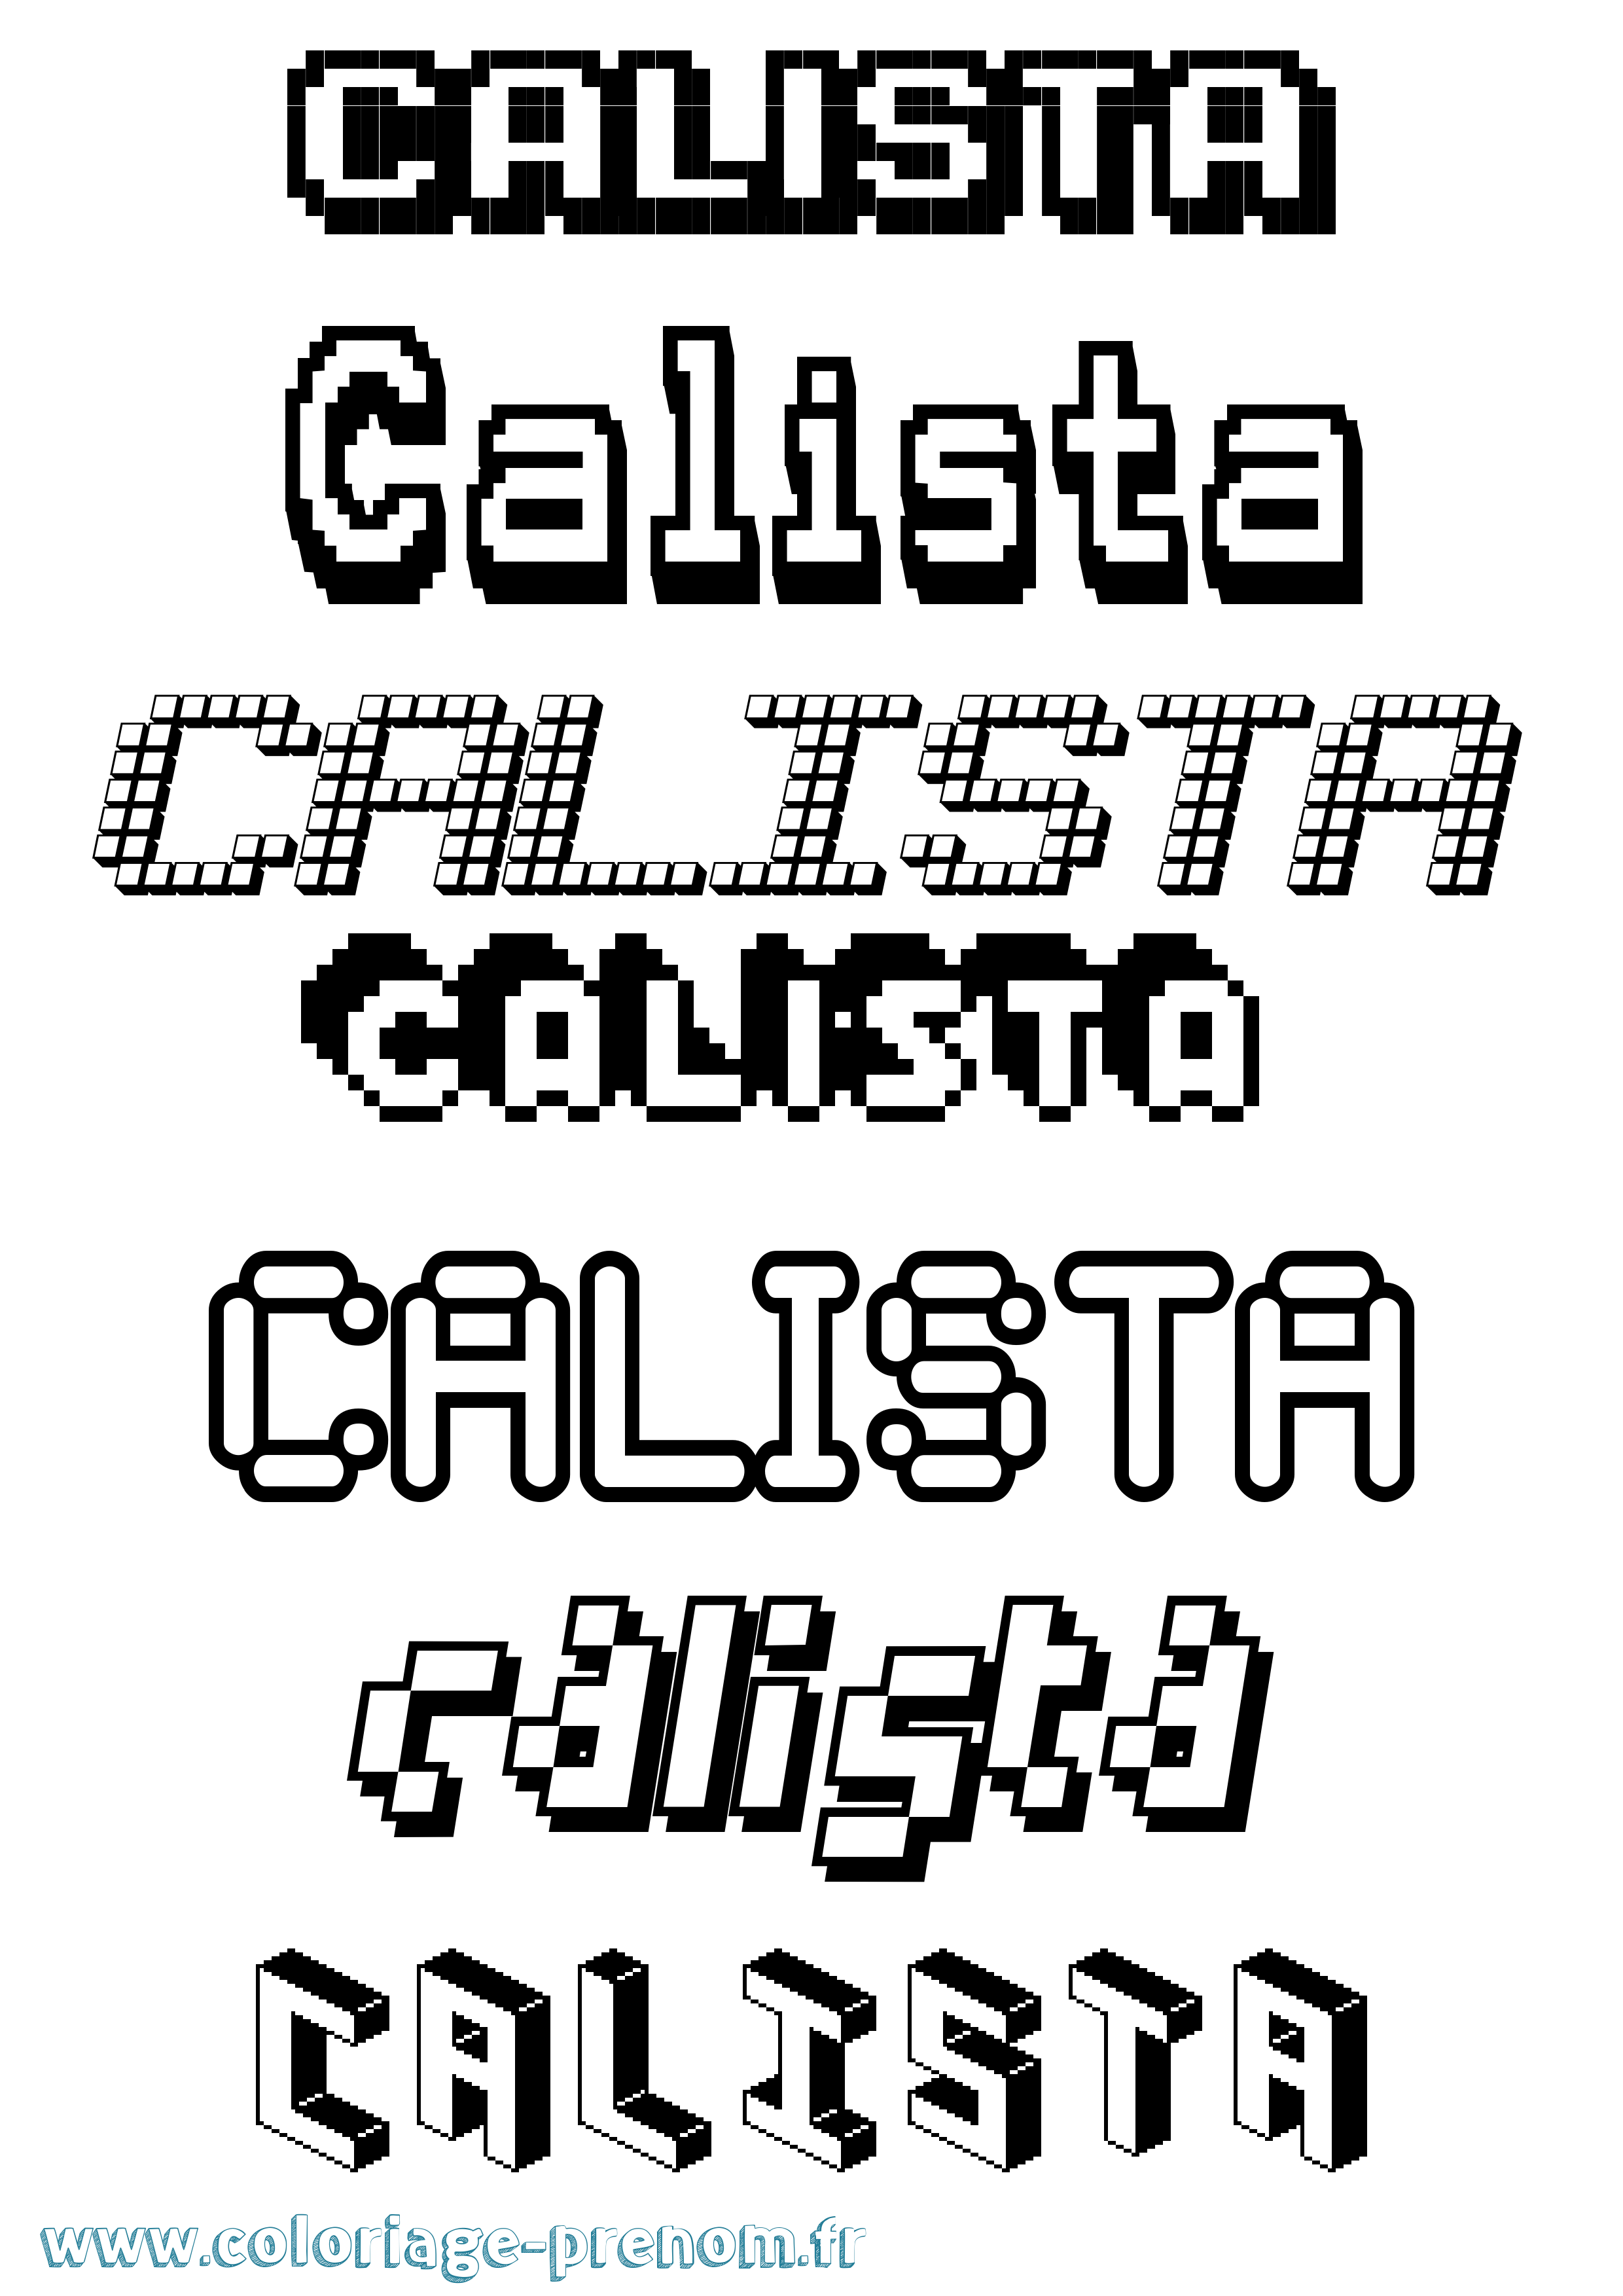 Coloriage prénom Calista Pixel